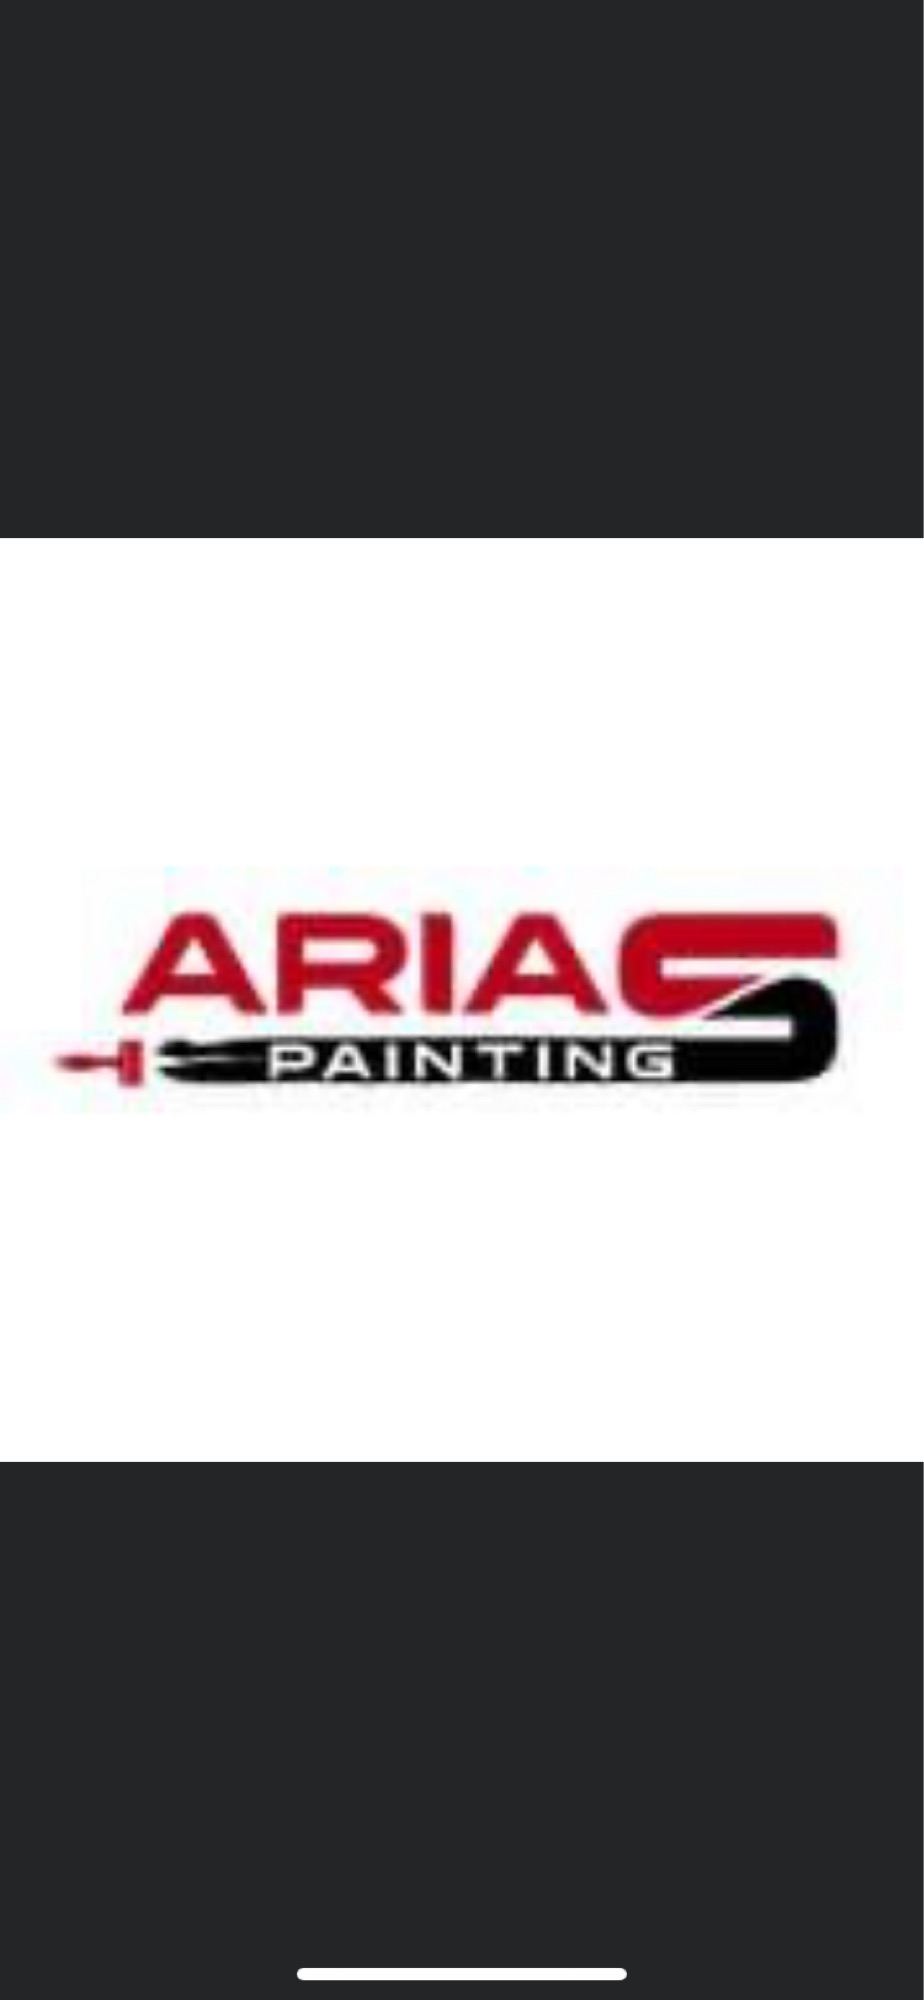 Arias Painting Logo